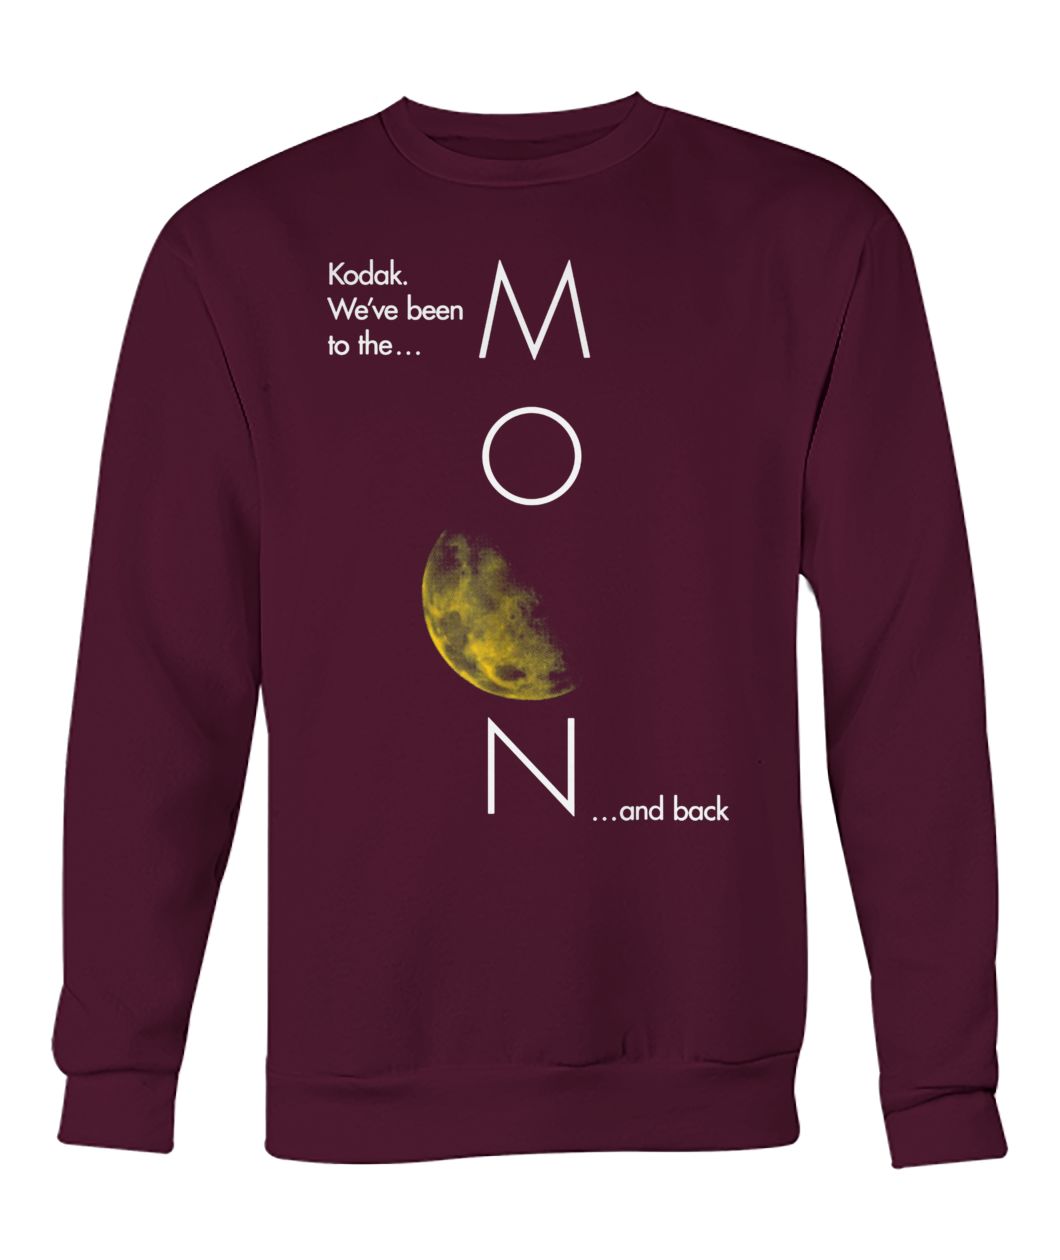 Kodak been to the moon and back crew neck sweatshirt